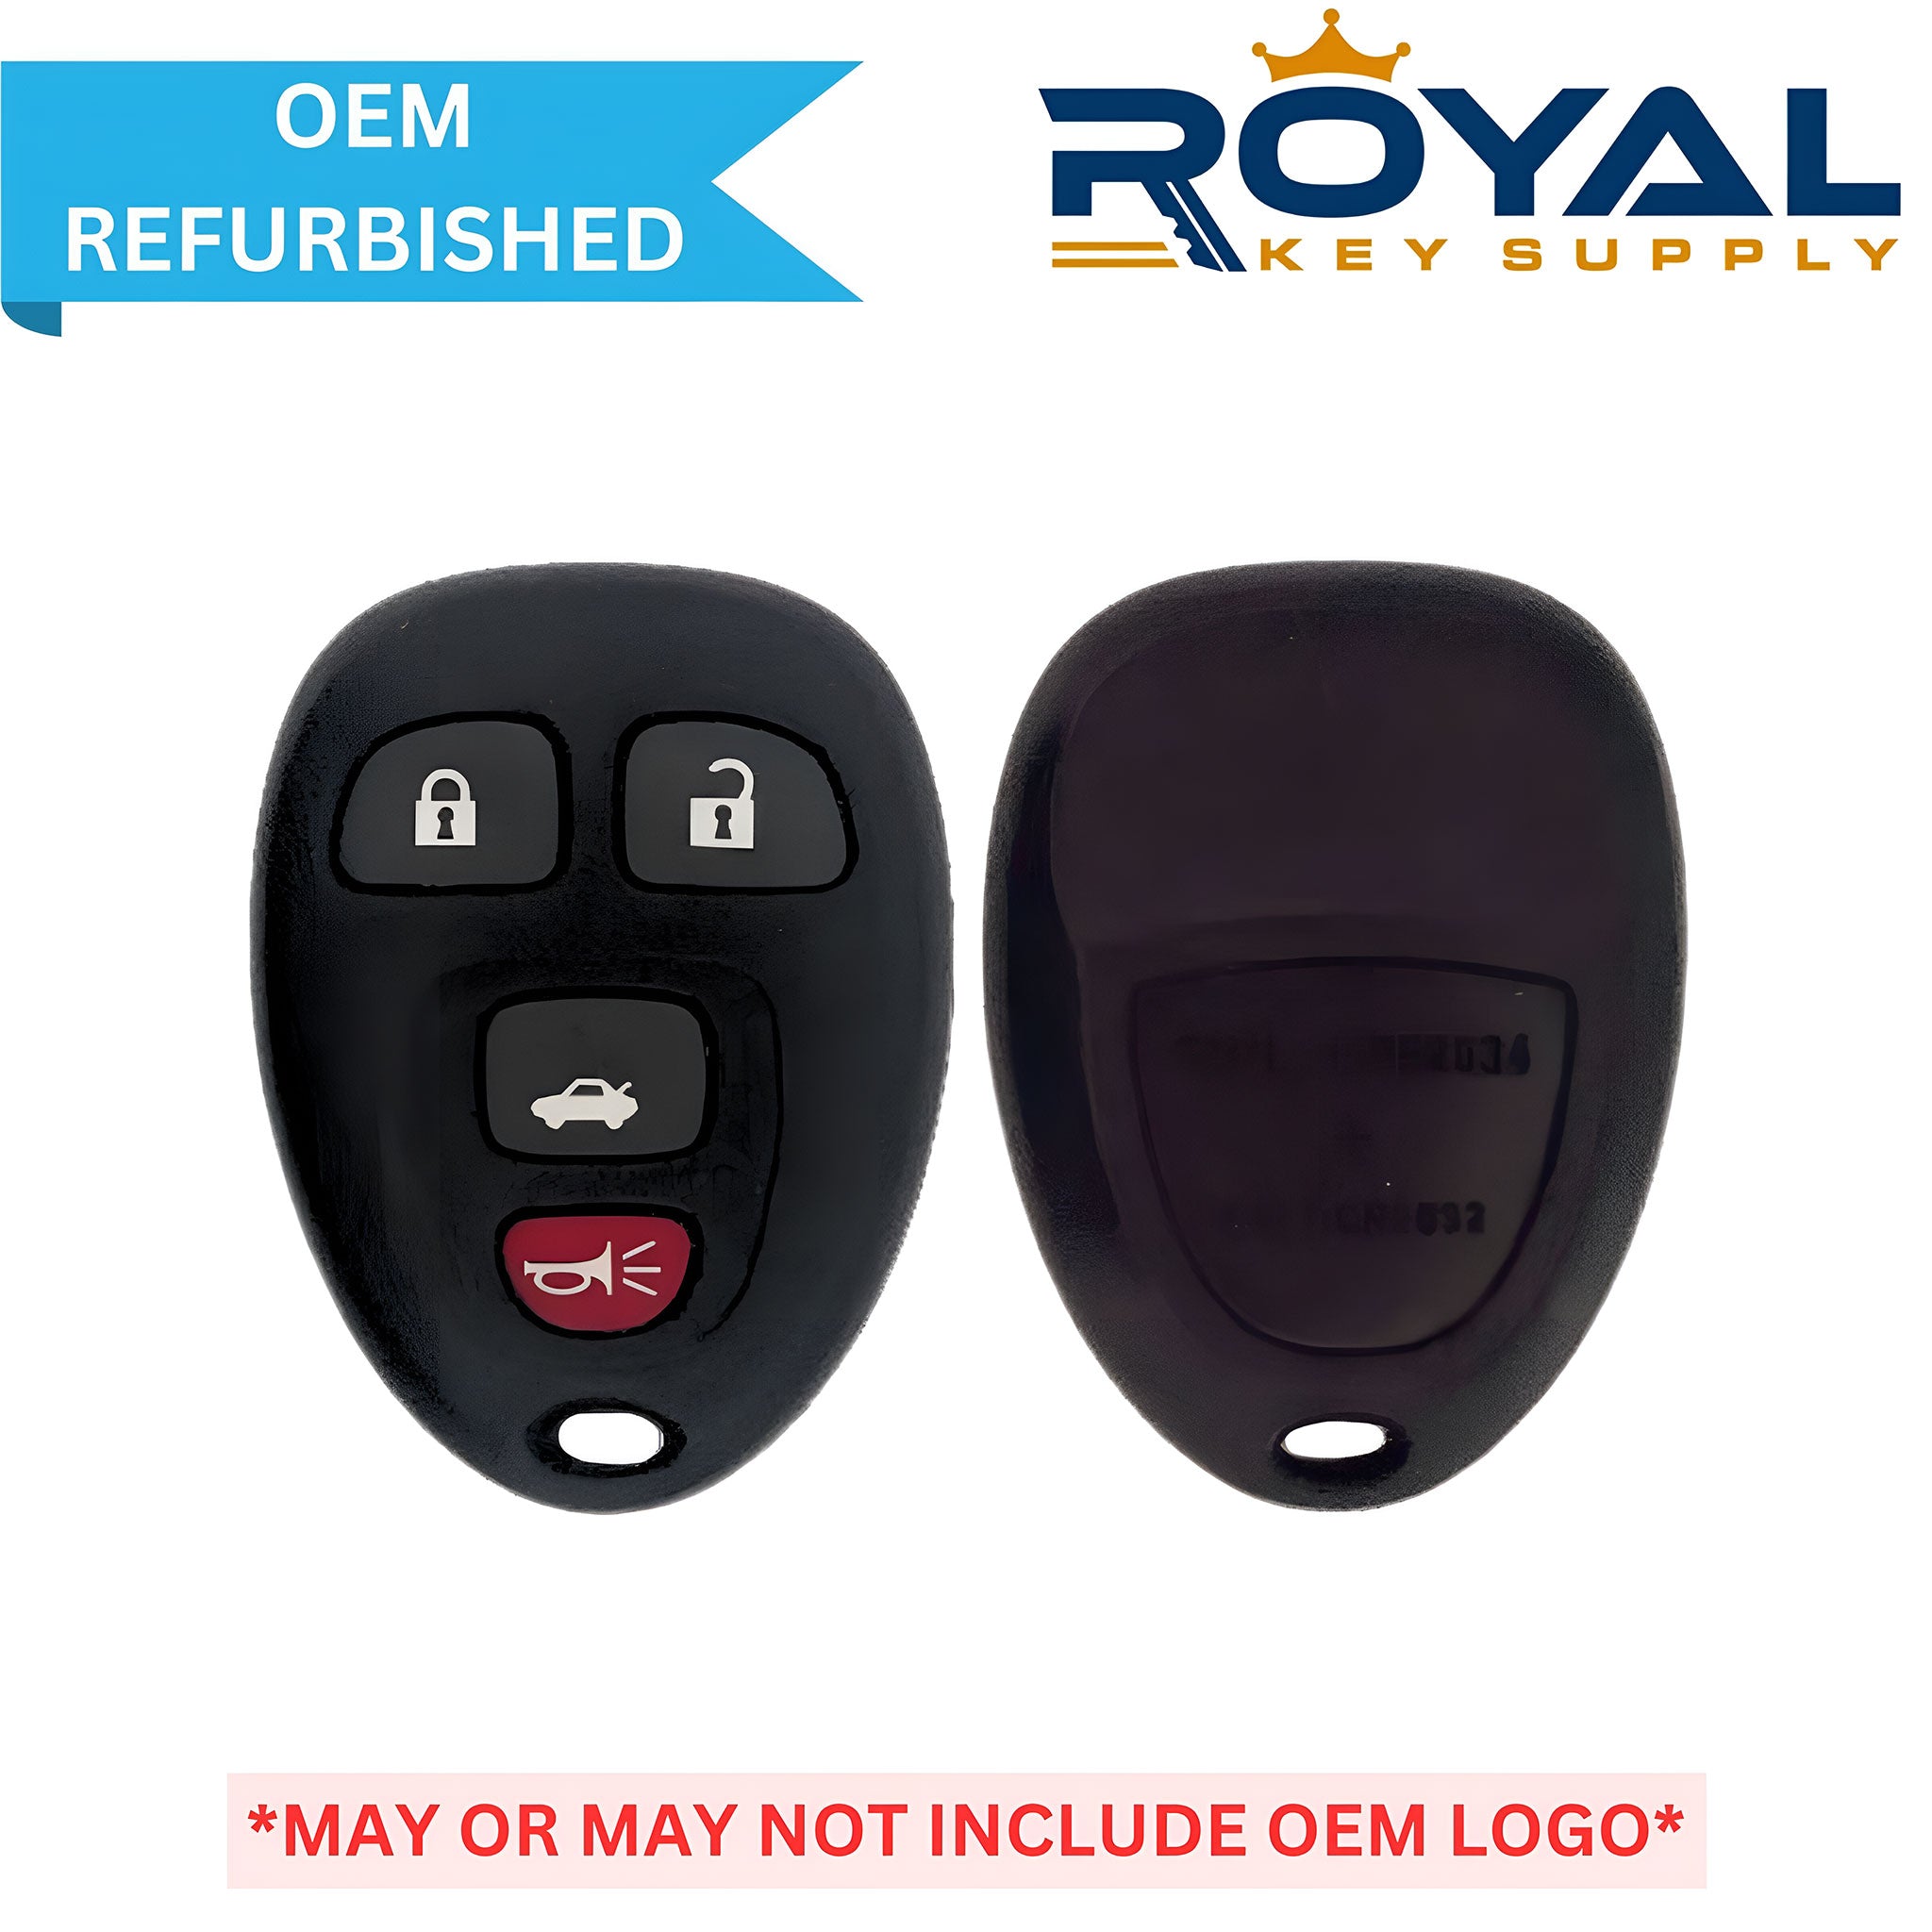 GM Refurbished 2004-2013 Impala Keyless Entry Remote 4B Trunk FCCID: OUC60270 PN# 20935330 - Royal Key Supply